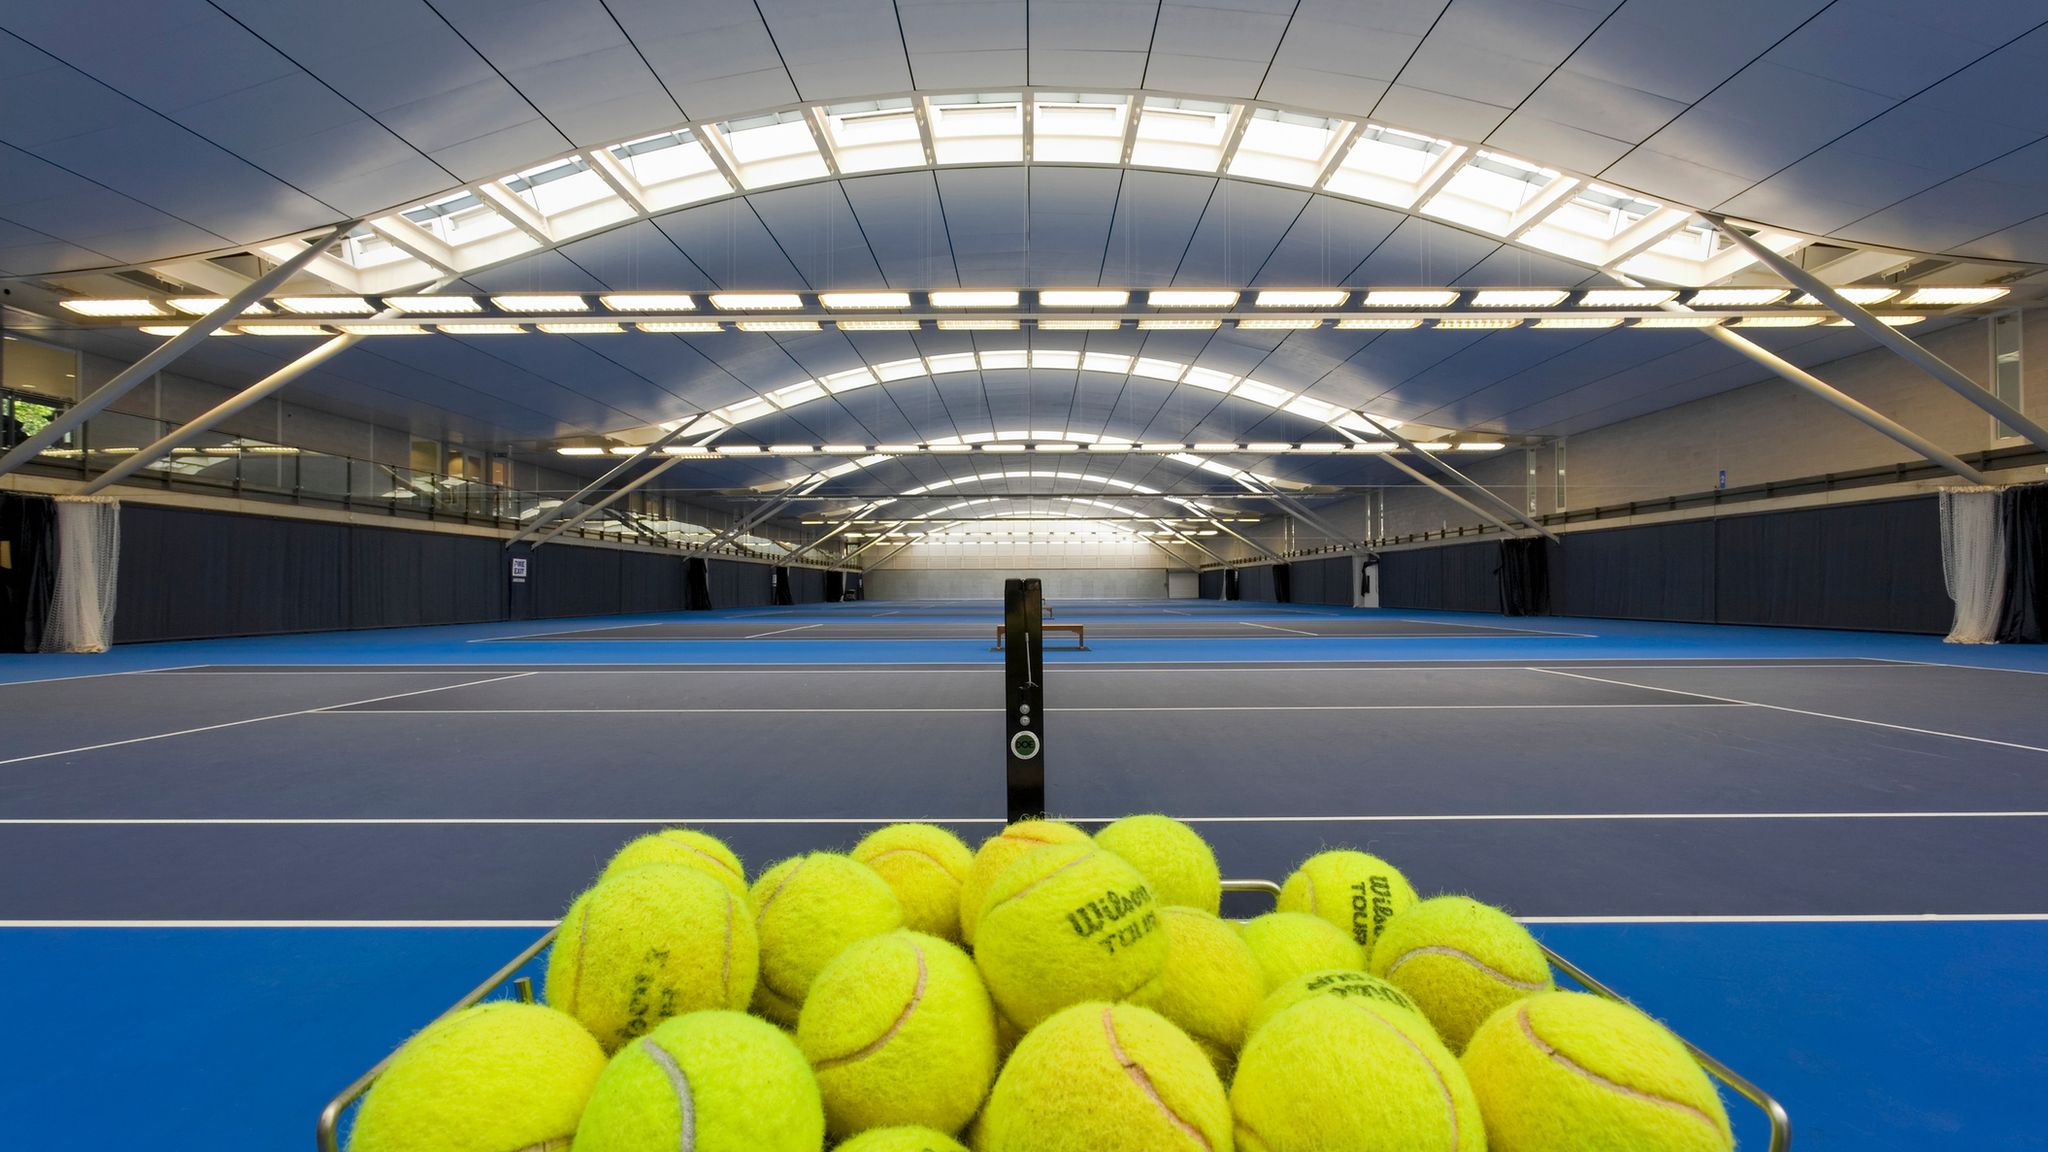 Indoor tennis courts at the LTA headquarters in Roehampton